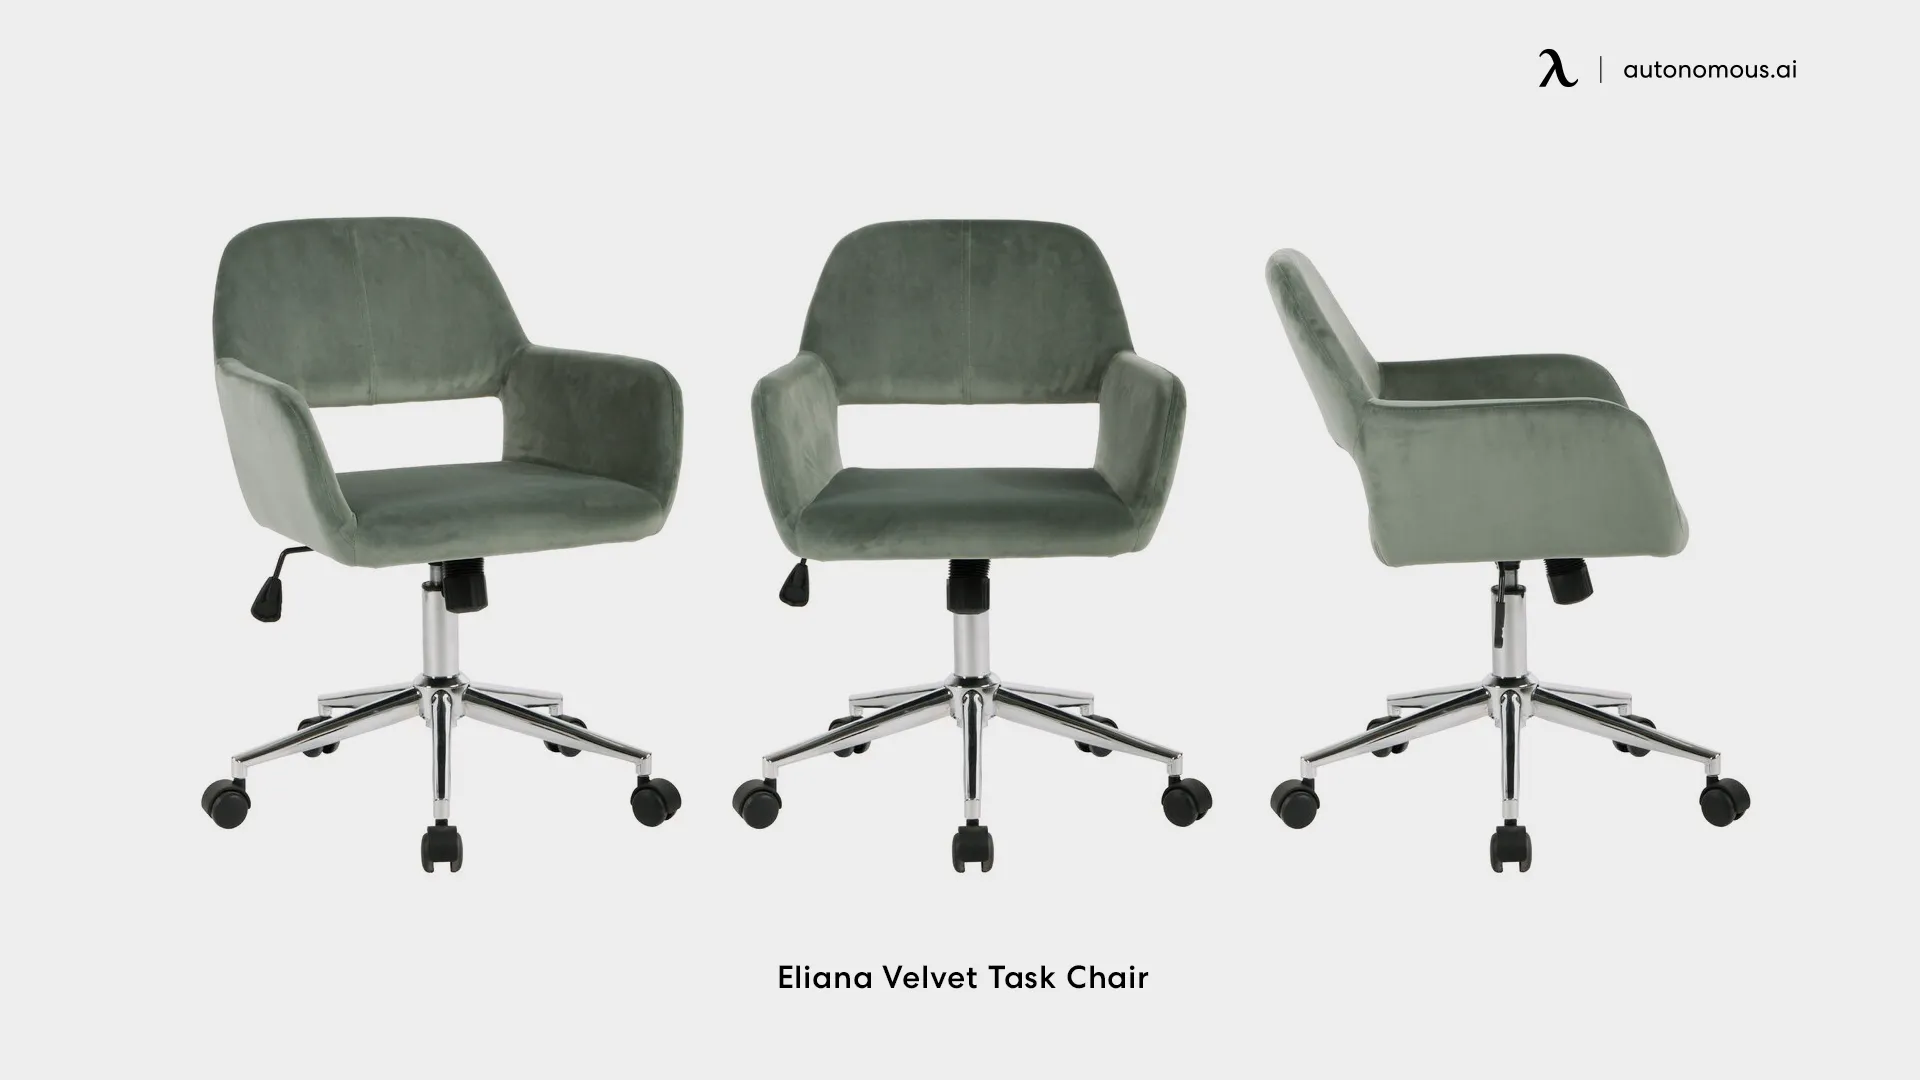 Eliana Velvet Task Chair